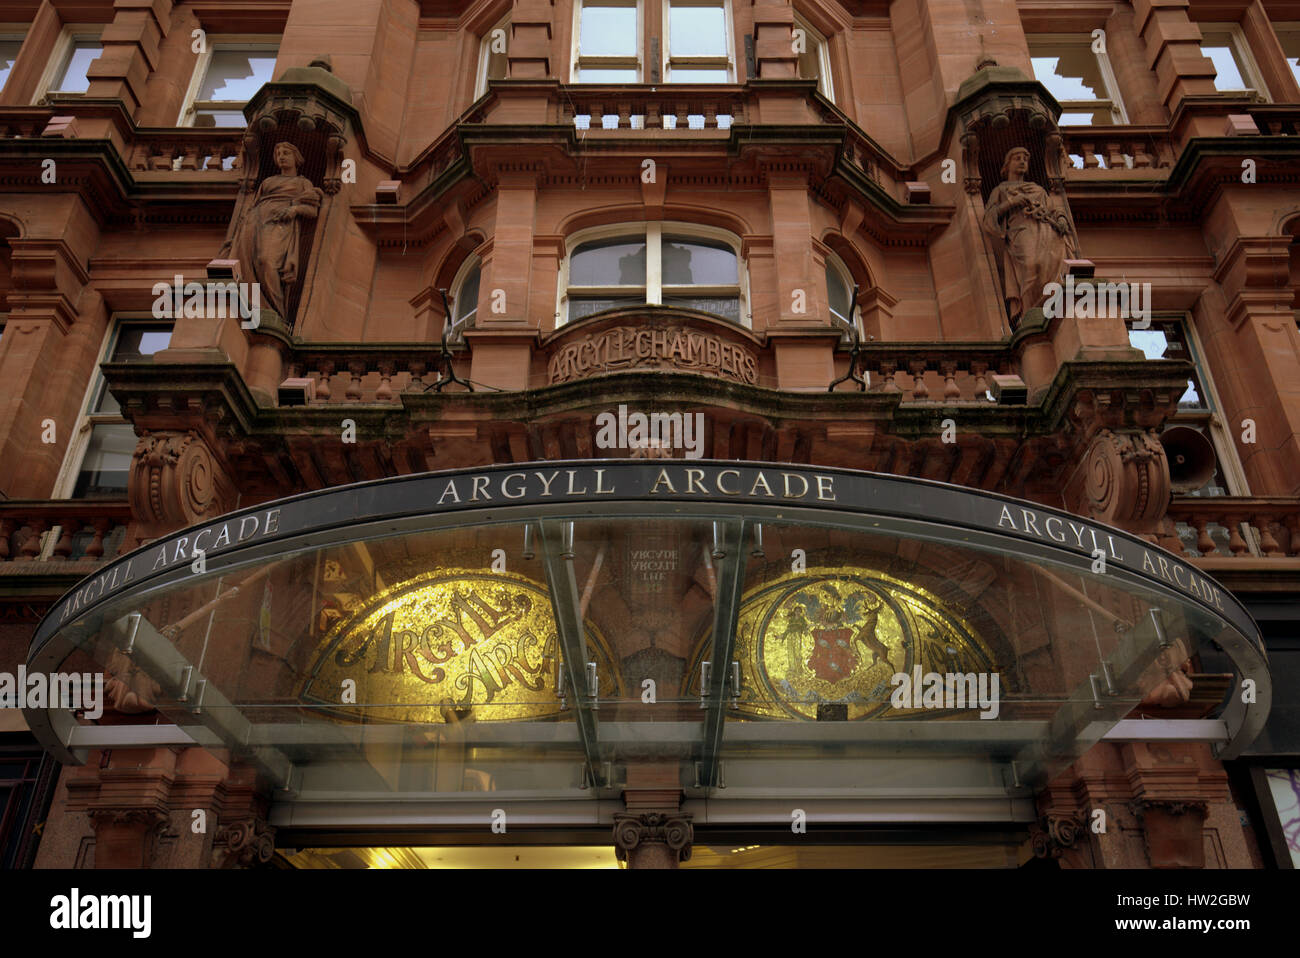 L'Argyll Arcade est l'un des plus anciens centres commerciaux couverts et l'Écosse de la toute première galerie marchande couverte. ARCADE de style parisien Banque D'Images